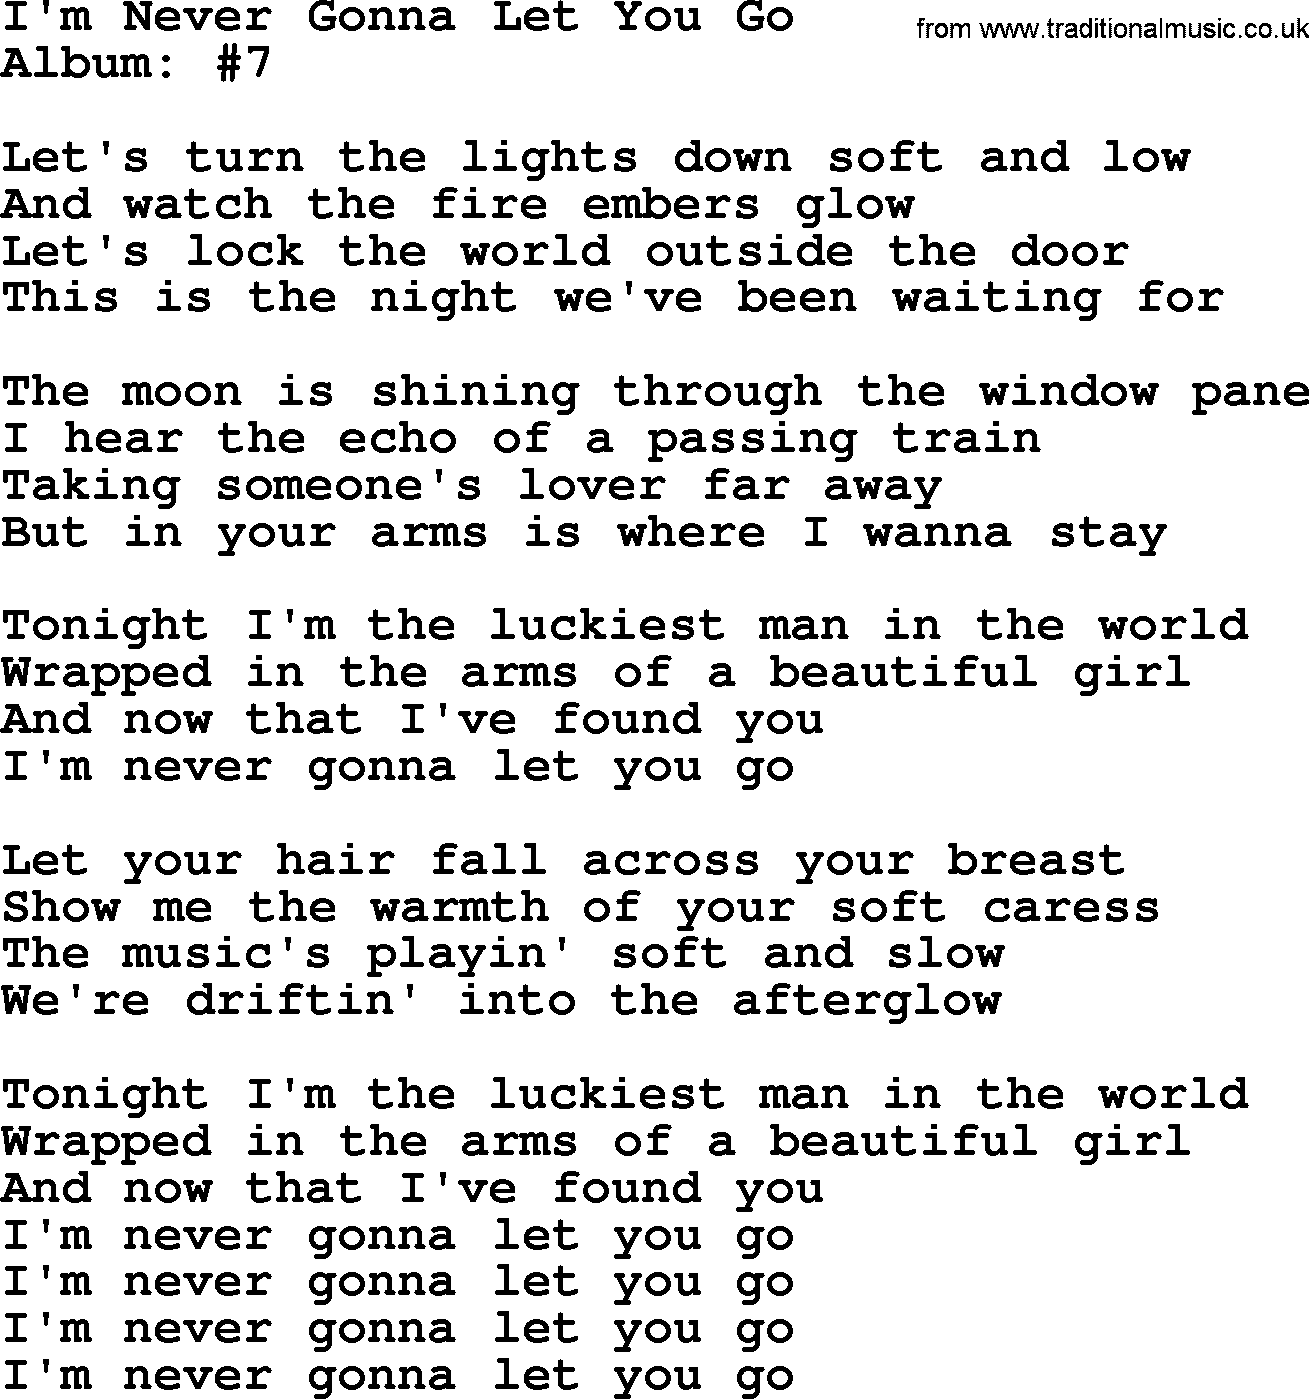 George Strait song: I'm Never Gonna Let You Go, lyrics